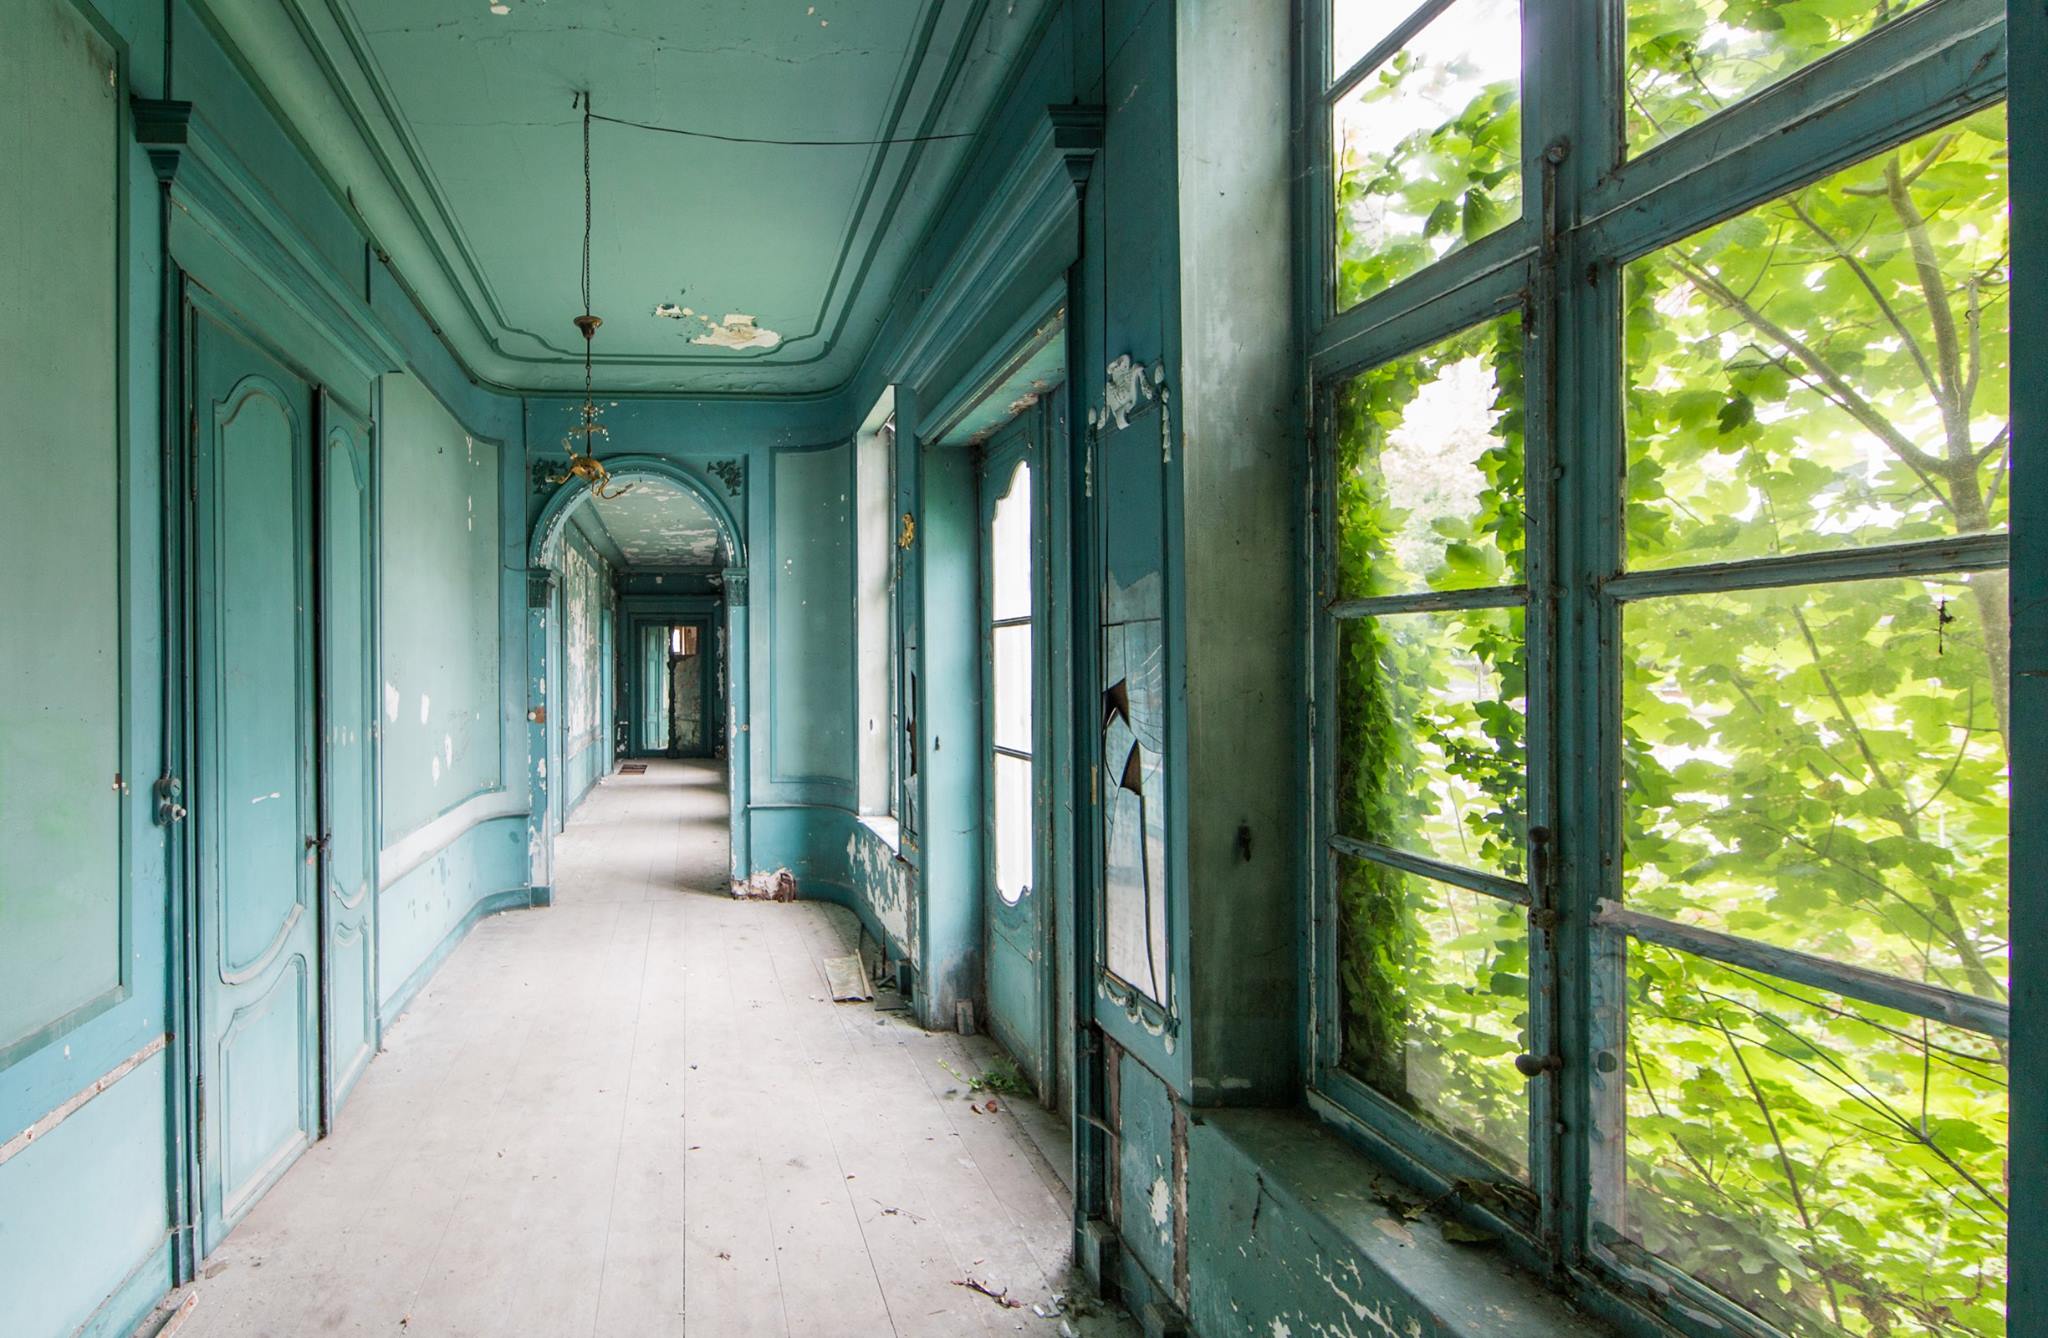 Intérieur d'un château abandonné aux murs verts-bleus. Contre les fenêtres, on voit les branches d'un arbre.